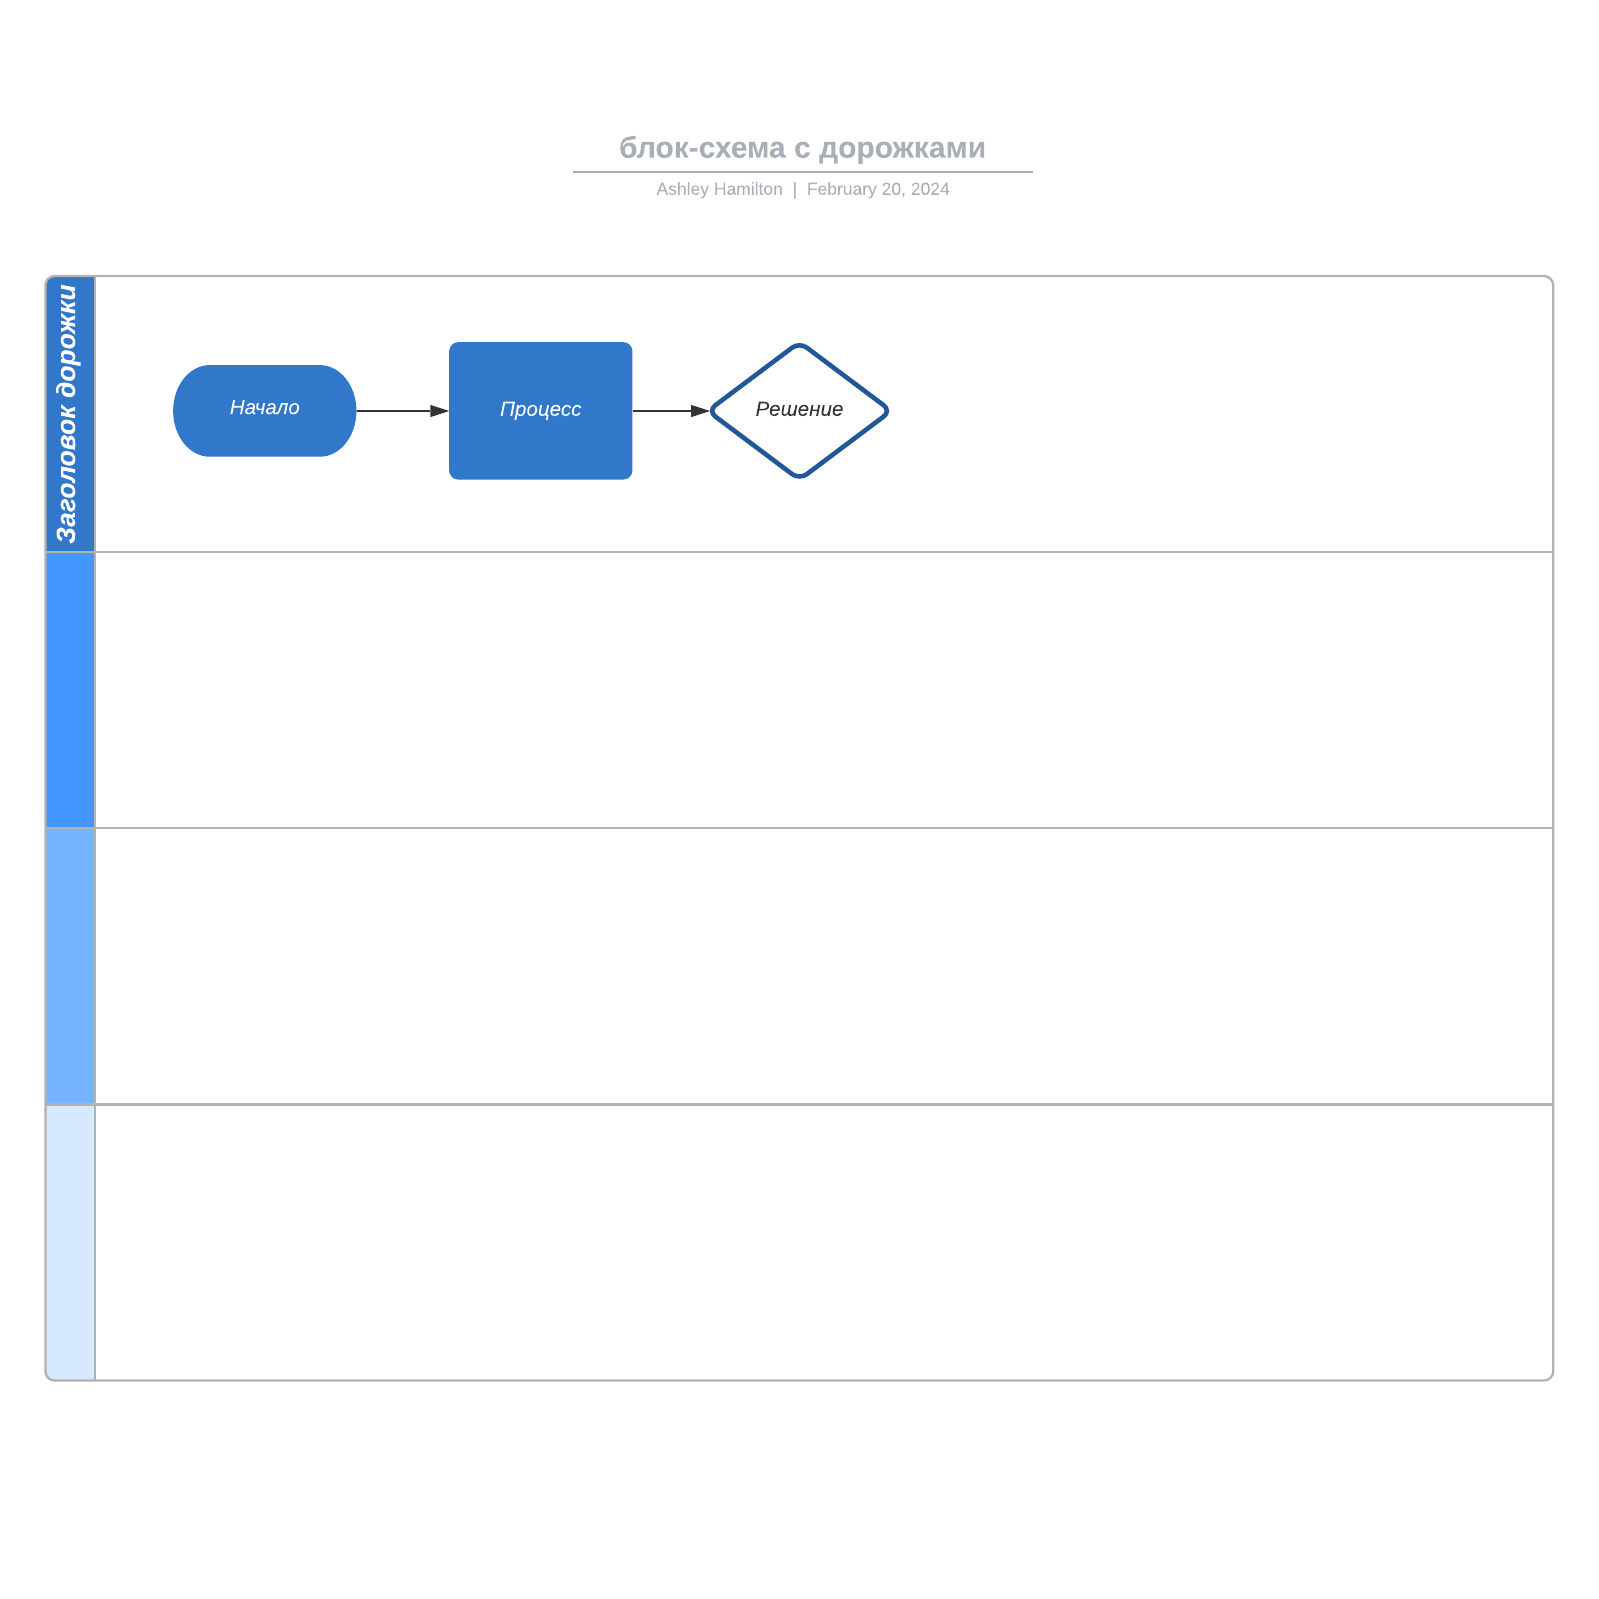 блок-схема с дорожками example